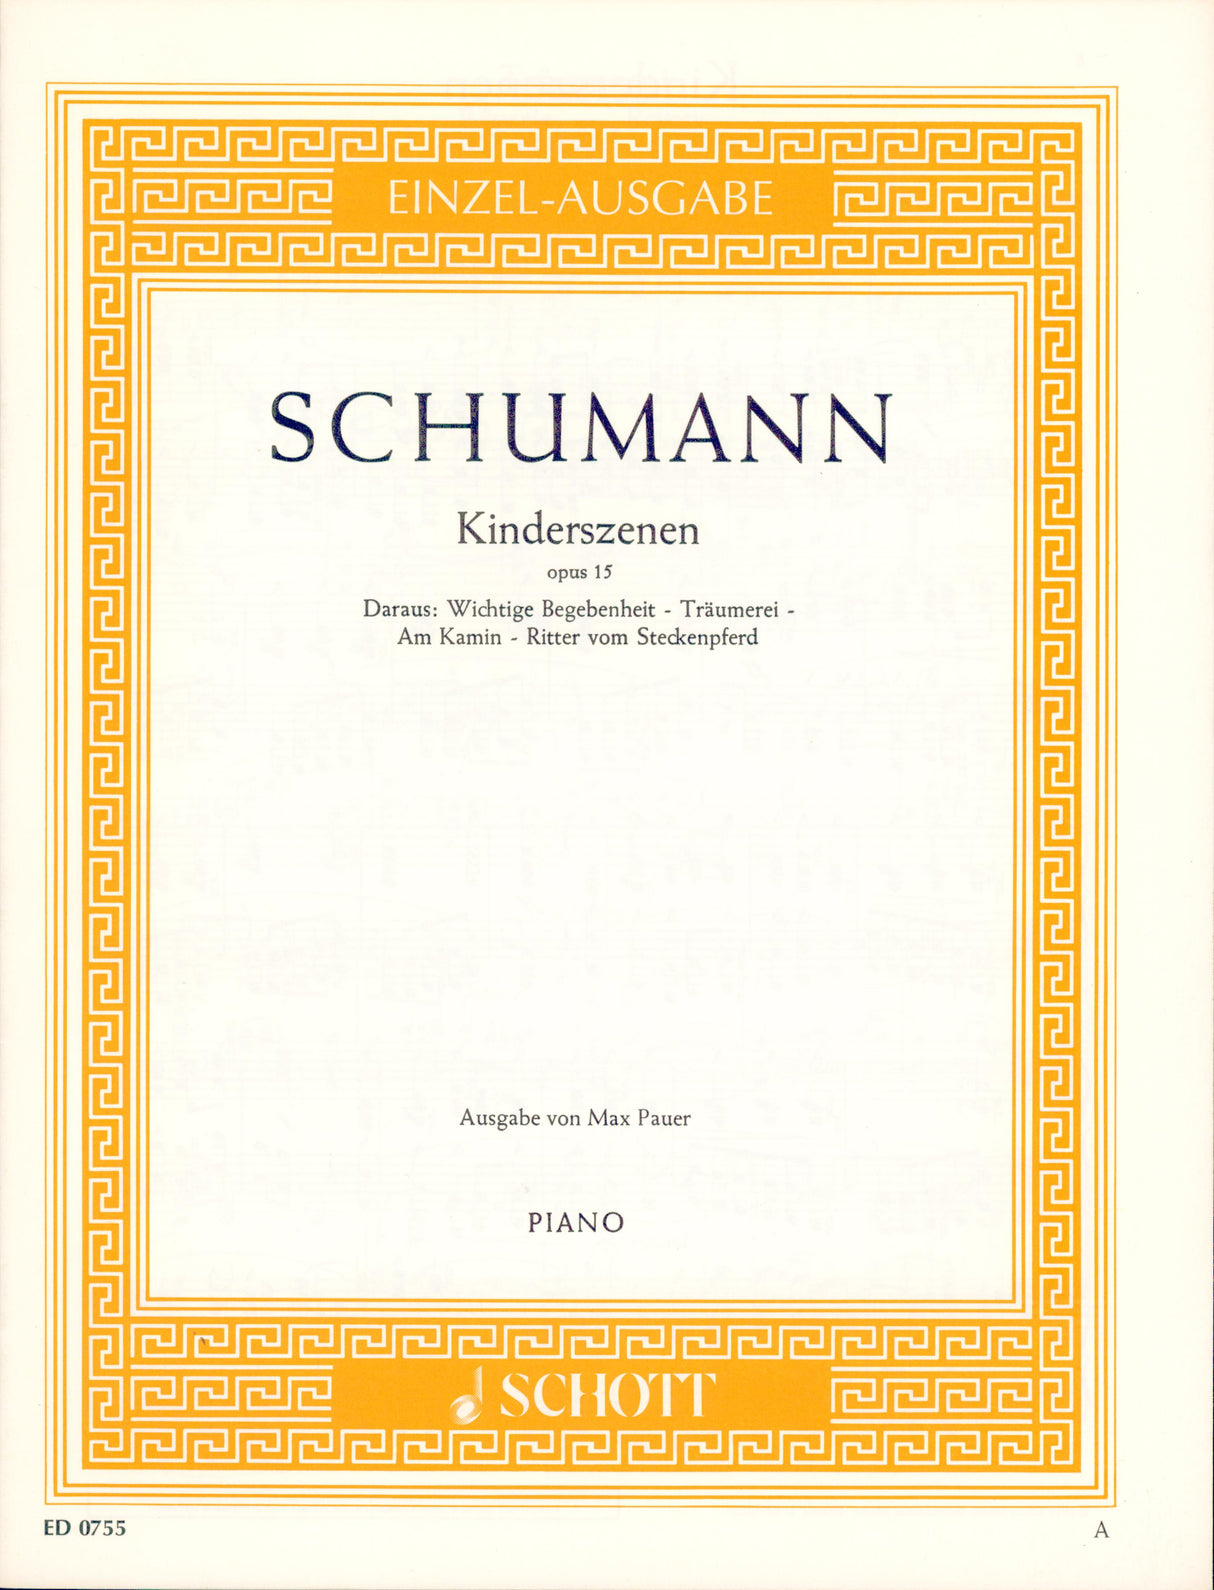 Schumann: Kinderszenen, Op. 15, Nos. 6-9